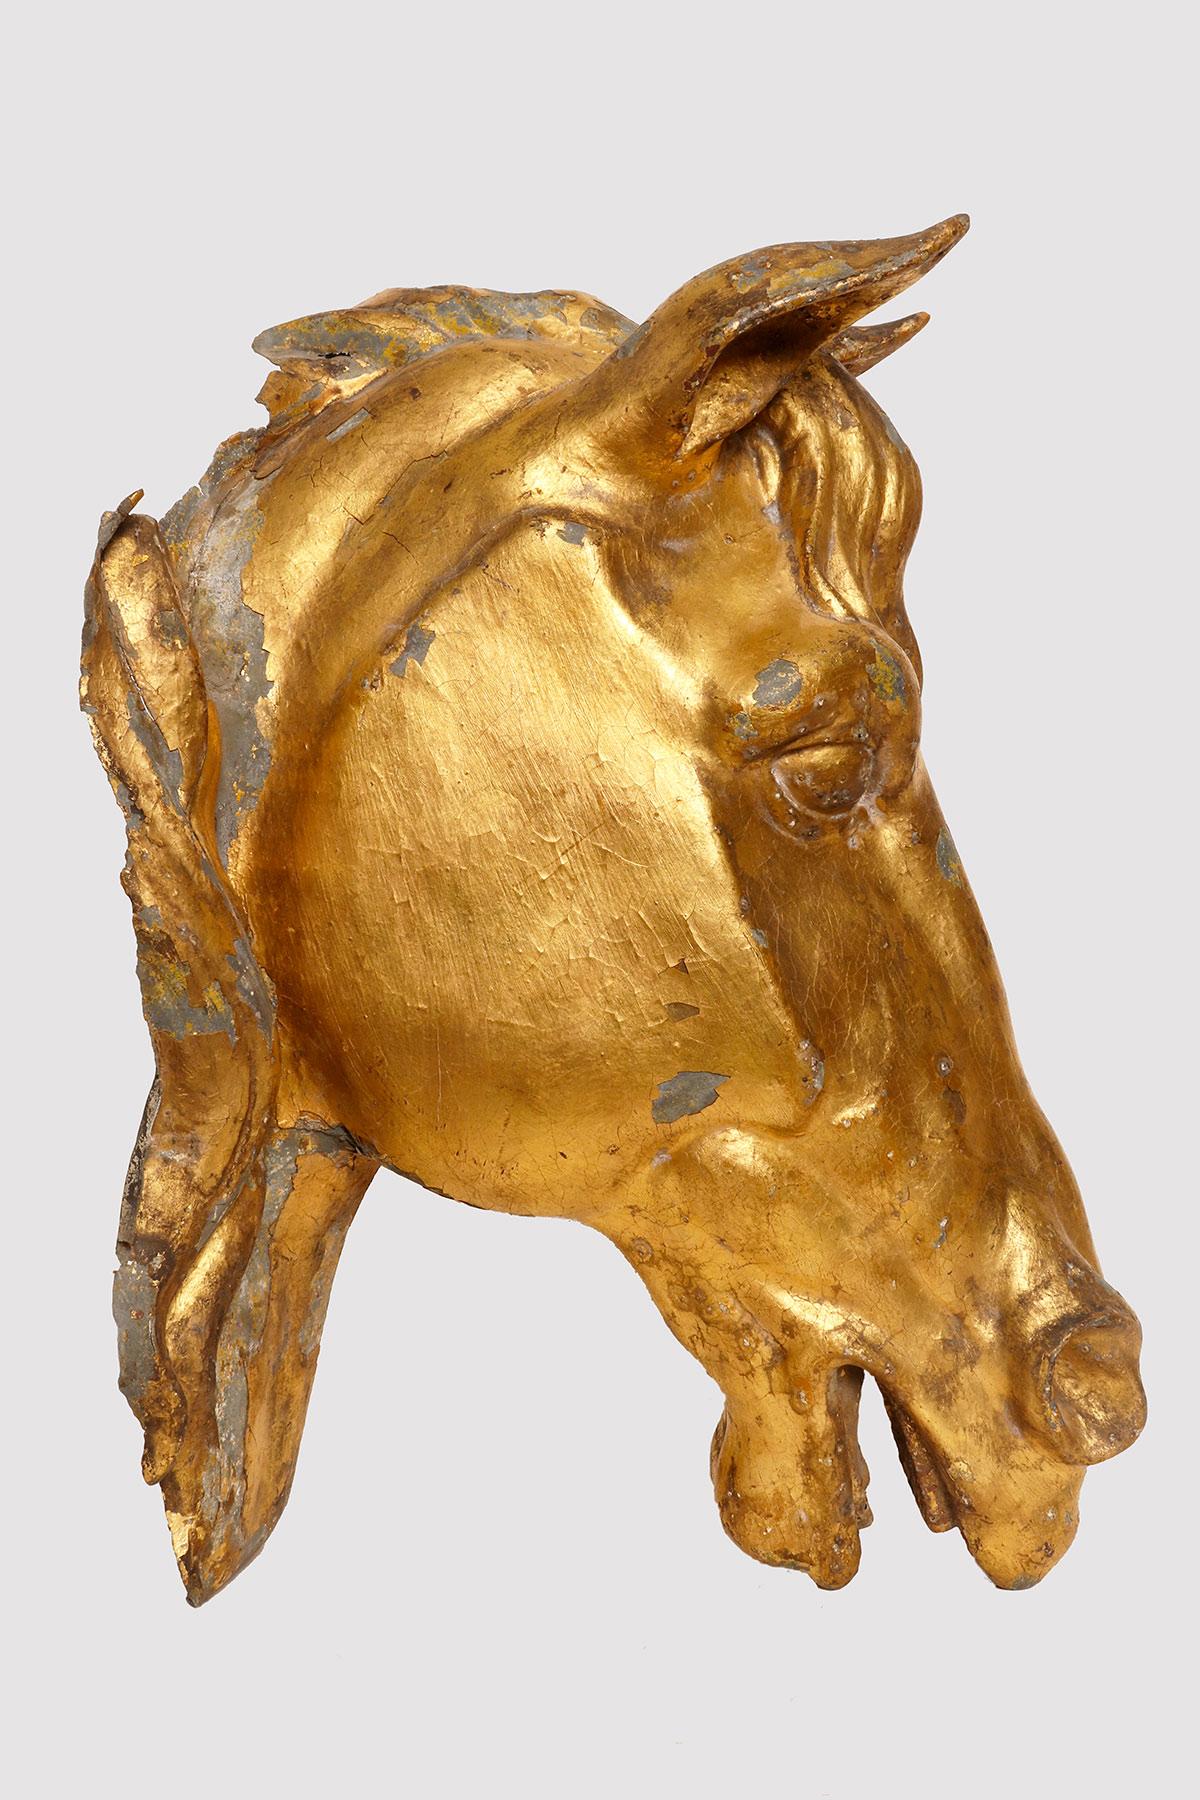 Sculpture en zinc doré à la feuille d'or représentant une tête de cheval. La sculpture est entièrement en relief et présente deux ailes de crinière. La tête d'équidé était un élément décoratif de la maison de campagne anglaise, peut-être mieux que